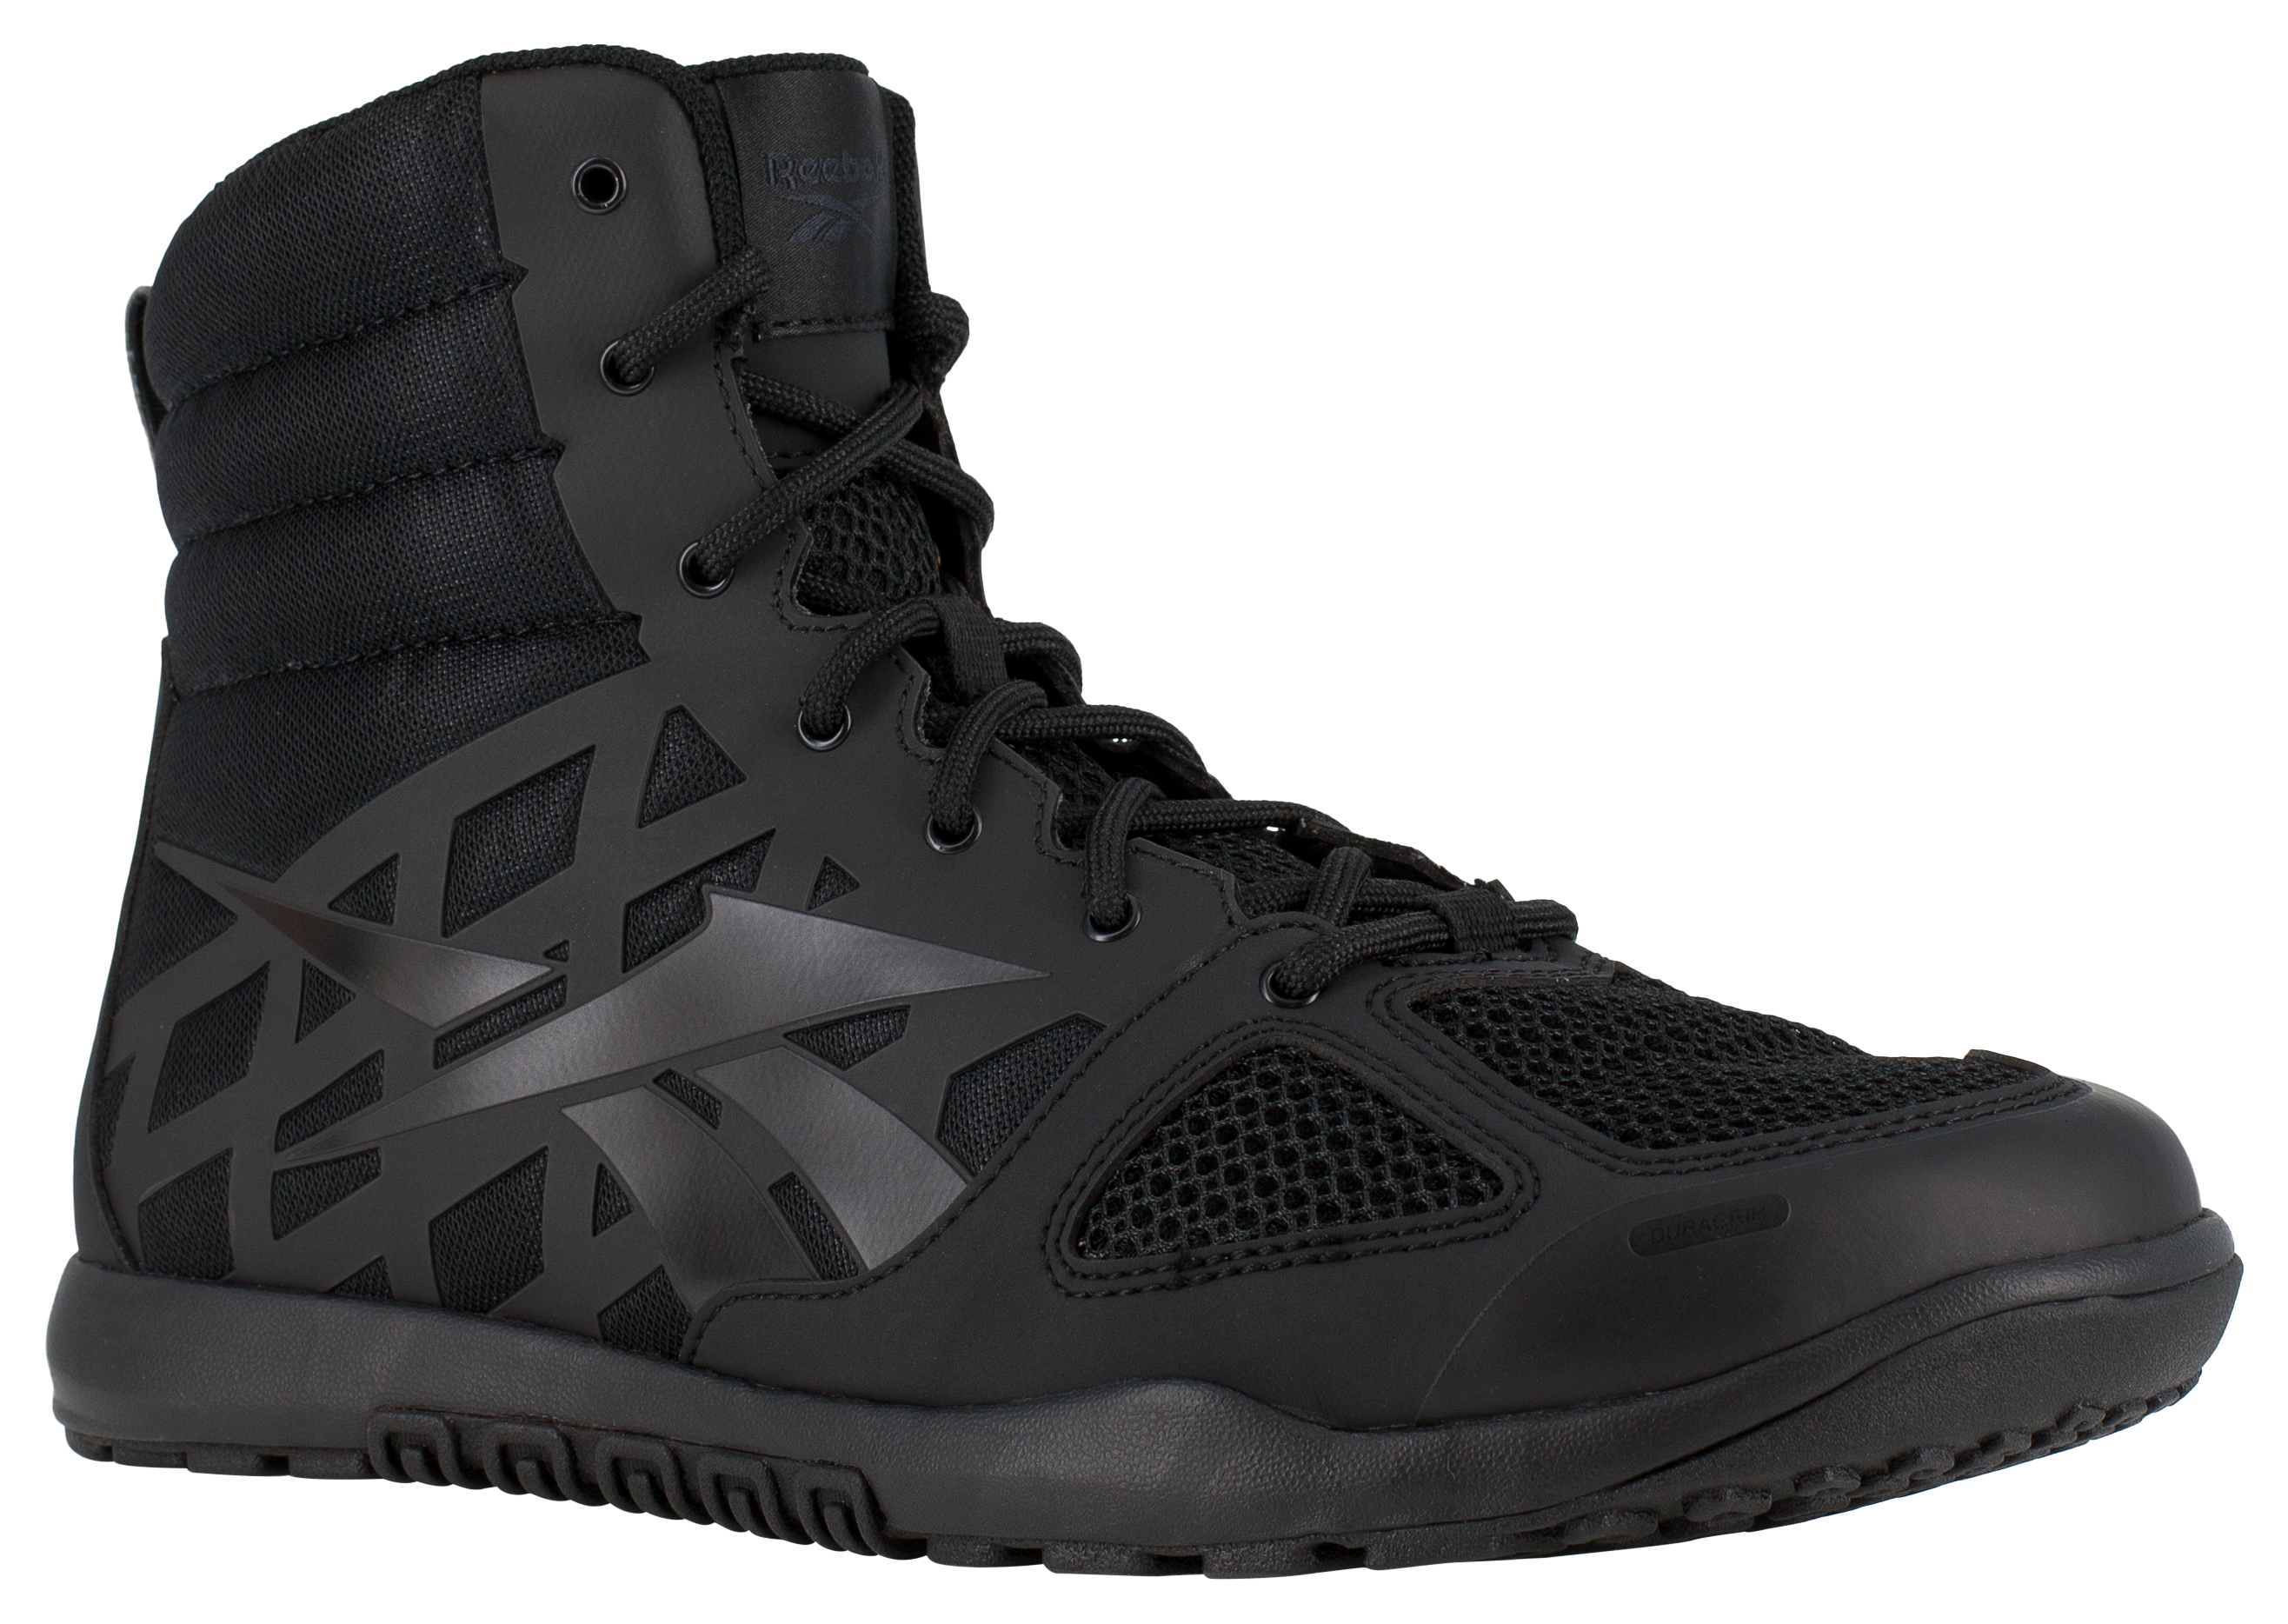 Reebok Nano Tactical 6″ Tactical Boots for Men - Black - 8.5W